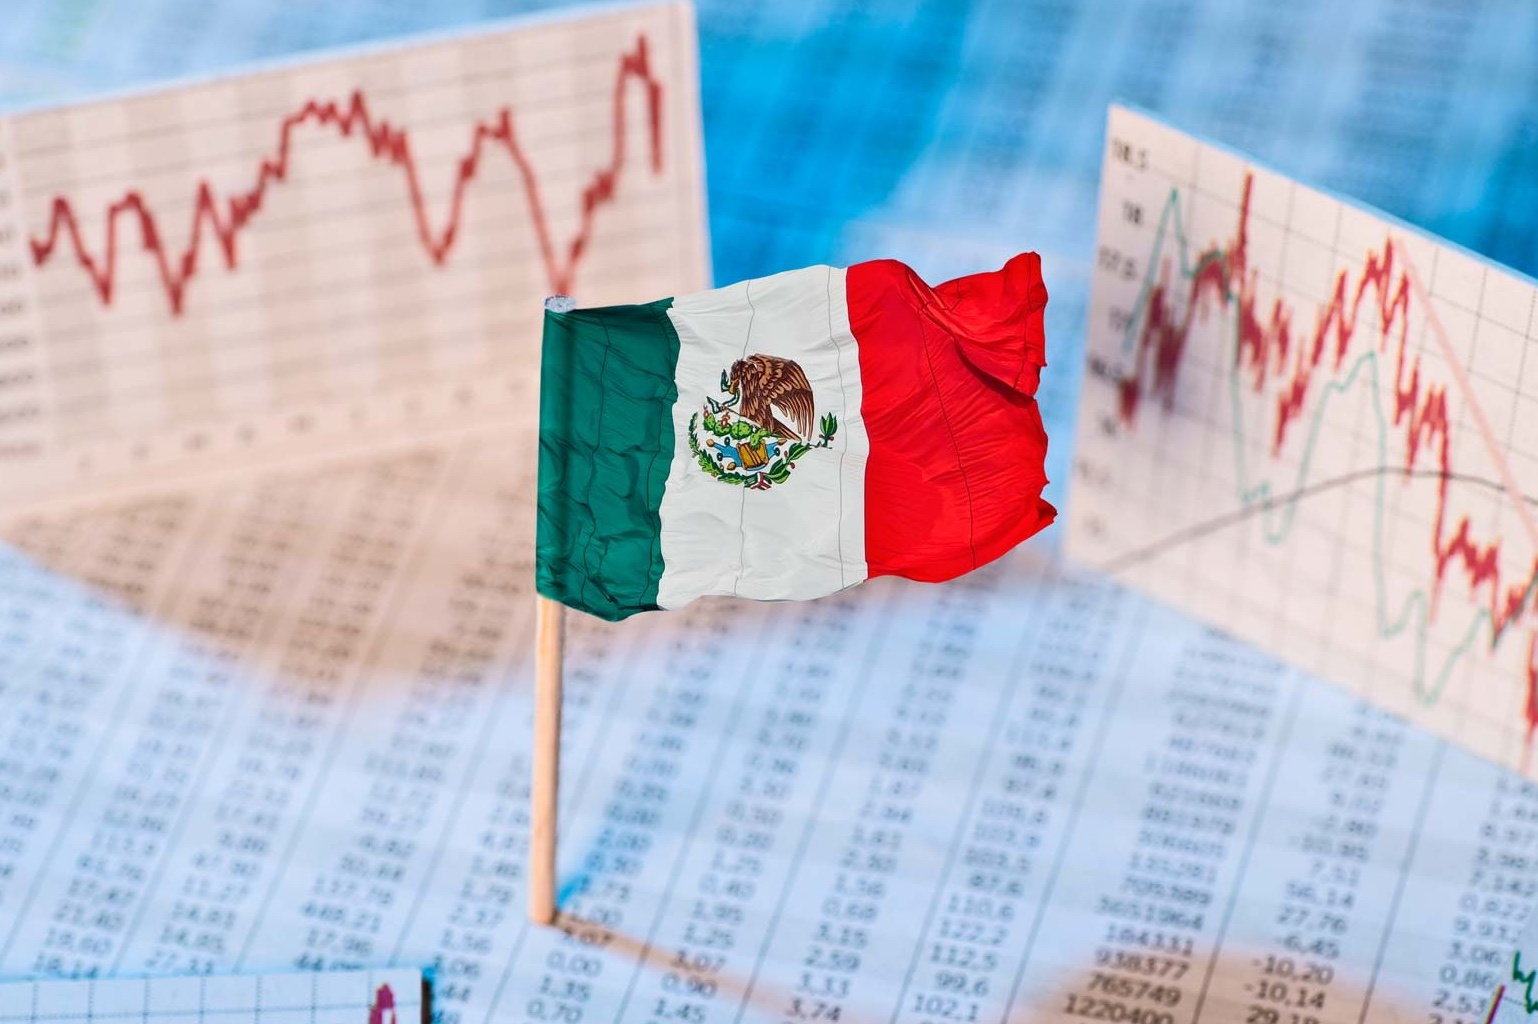 México es “la economía emergente mejor posicionada”: Bank of América